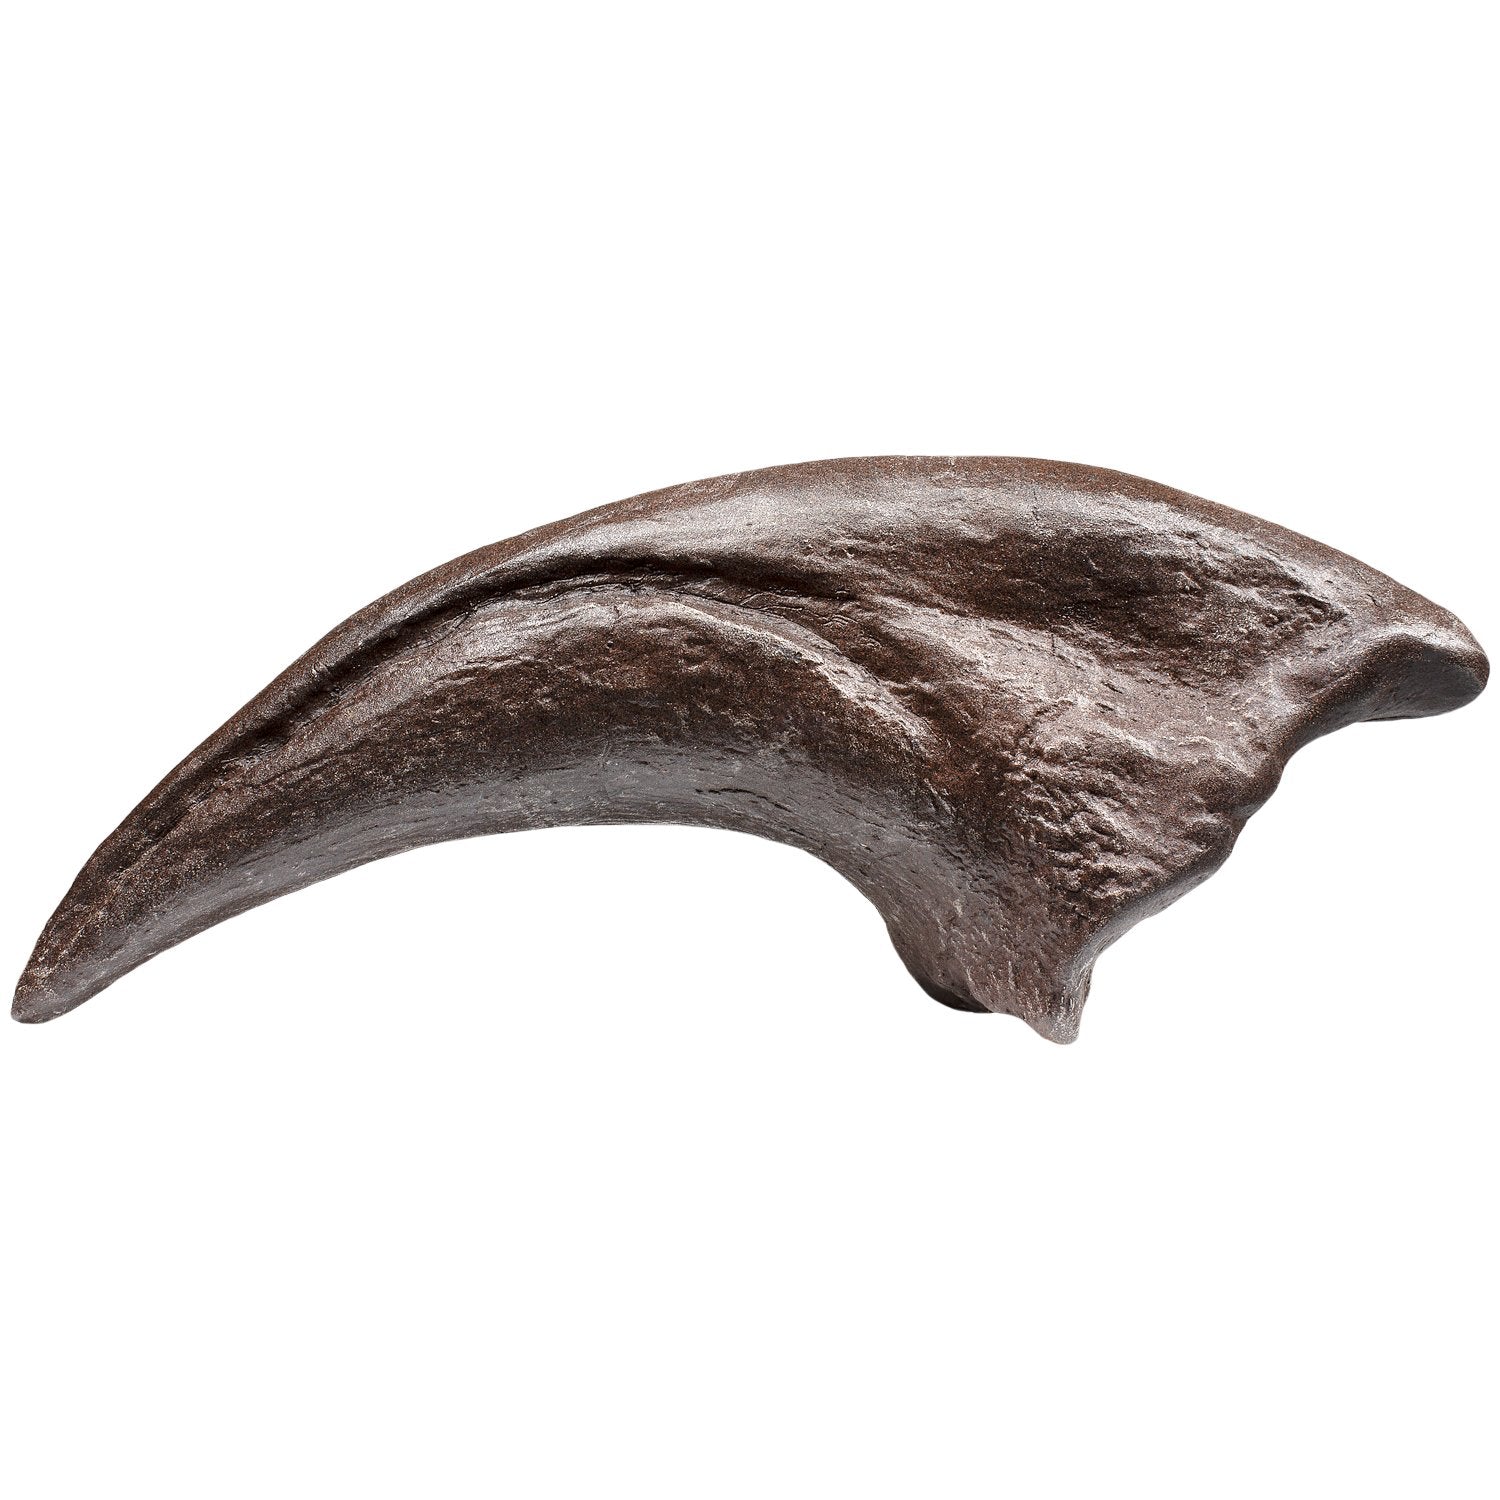 MR Allosaurus Toe Claw Fossil Replica